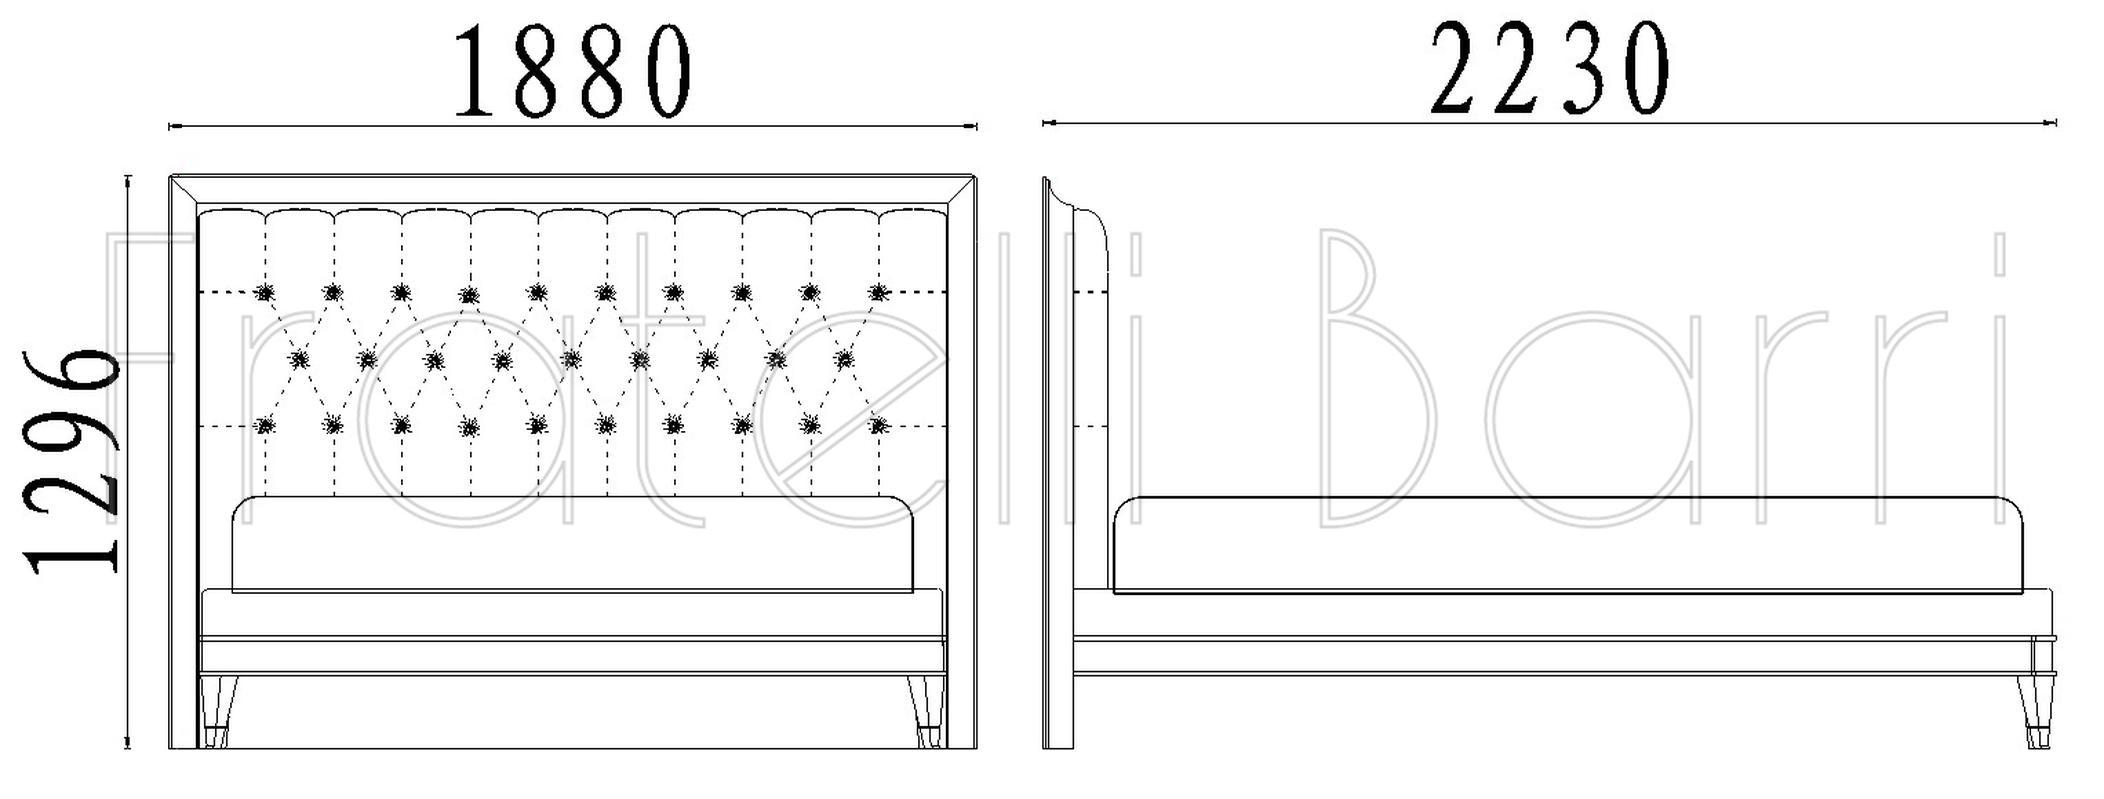 Кровать с решеткой отделка жемчужный белый лак, ткань Anyzo-01 с рисунком